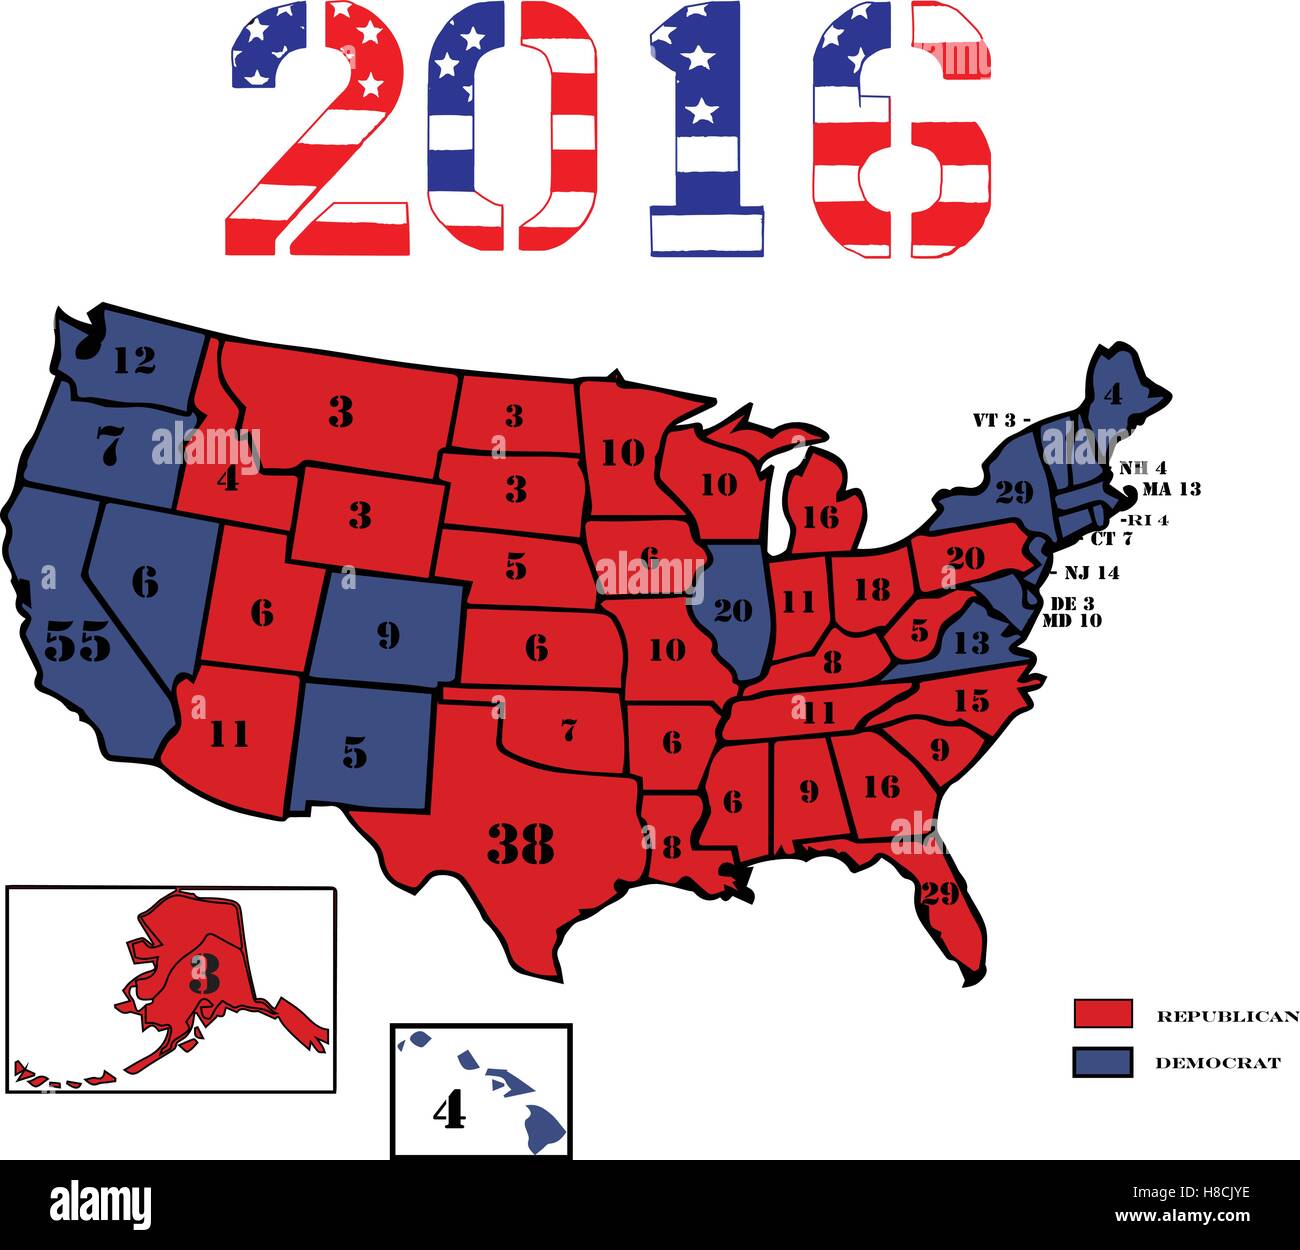 50 US-Bundesstaaten Republikaner rot, blau Demokrat und Anzeige der Anzahl von Wahlstimmen für die 2016 Wahl gefärbt. Stock Vektor